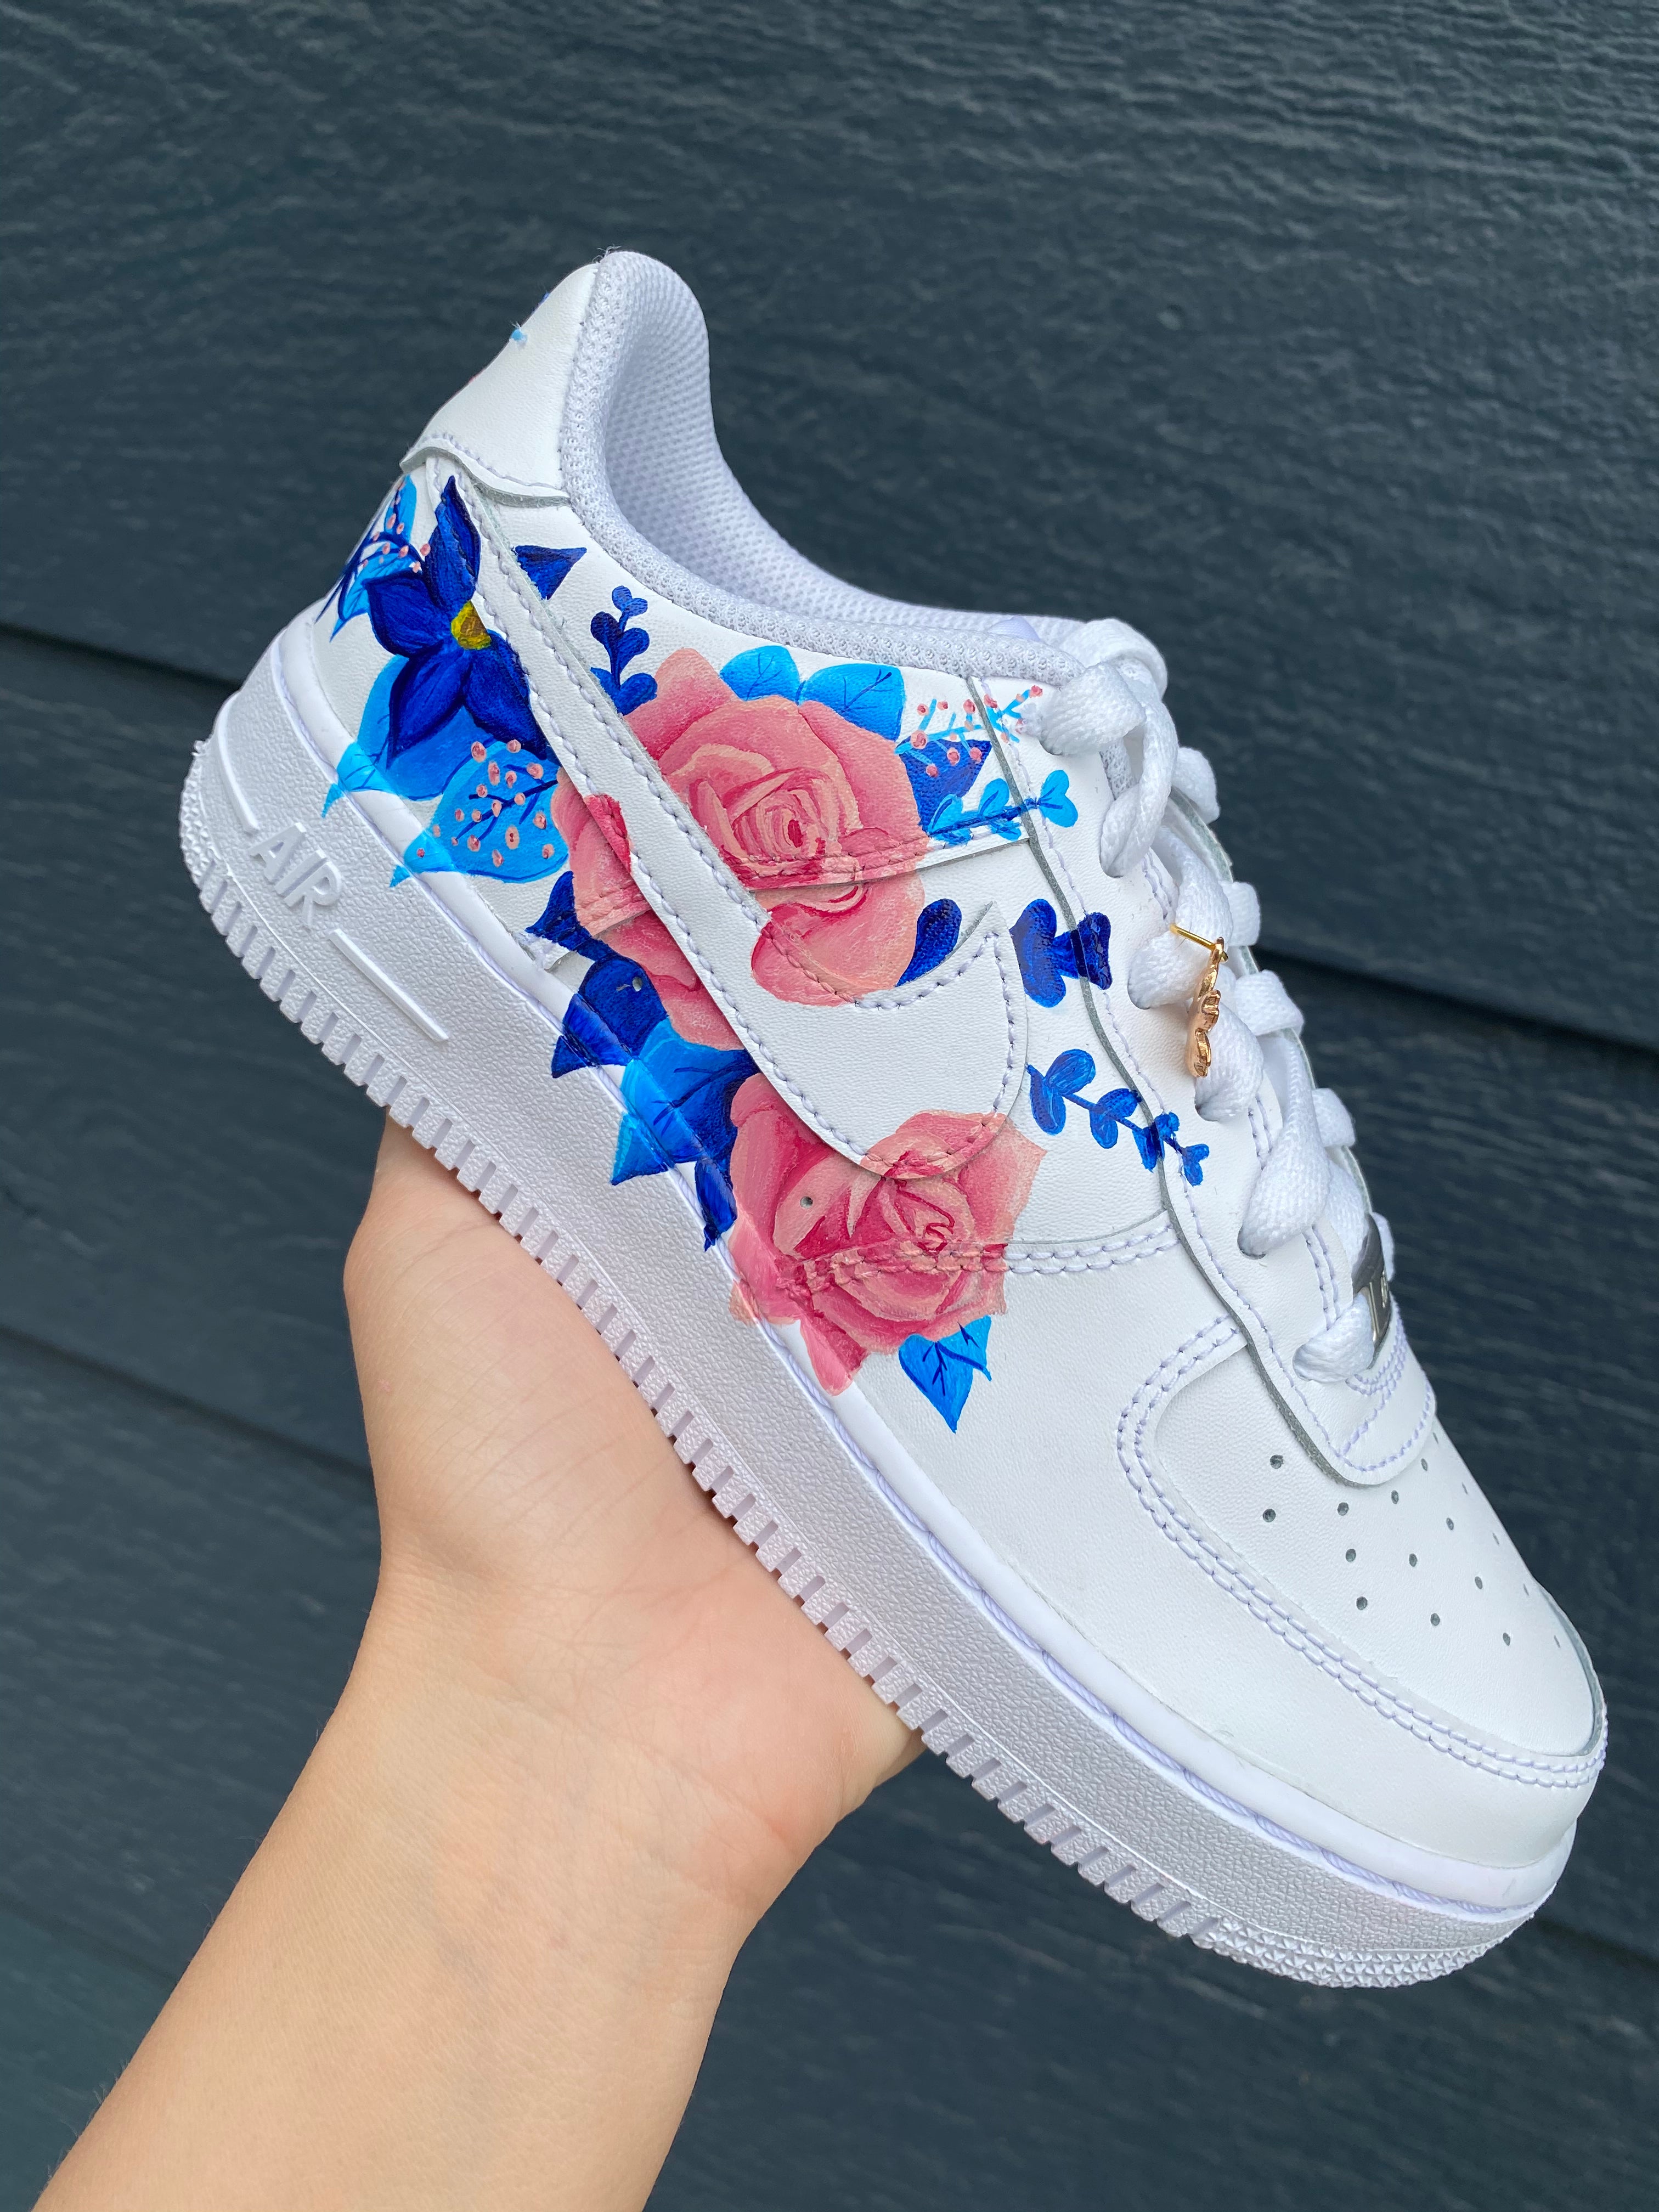 Nike Air Force 1 pink Flower Custom Sneaker AF1 